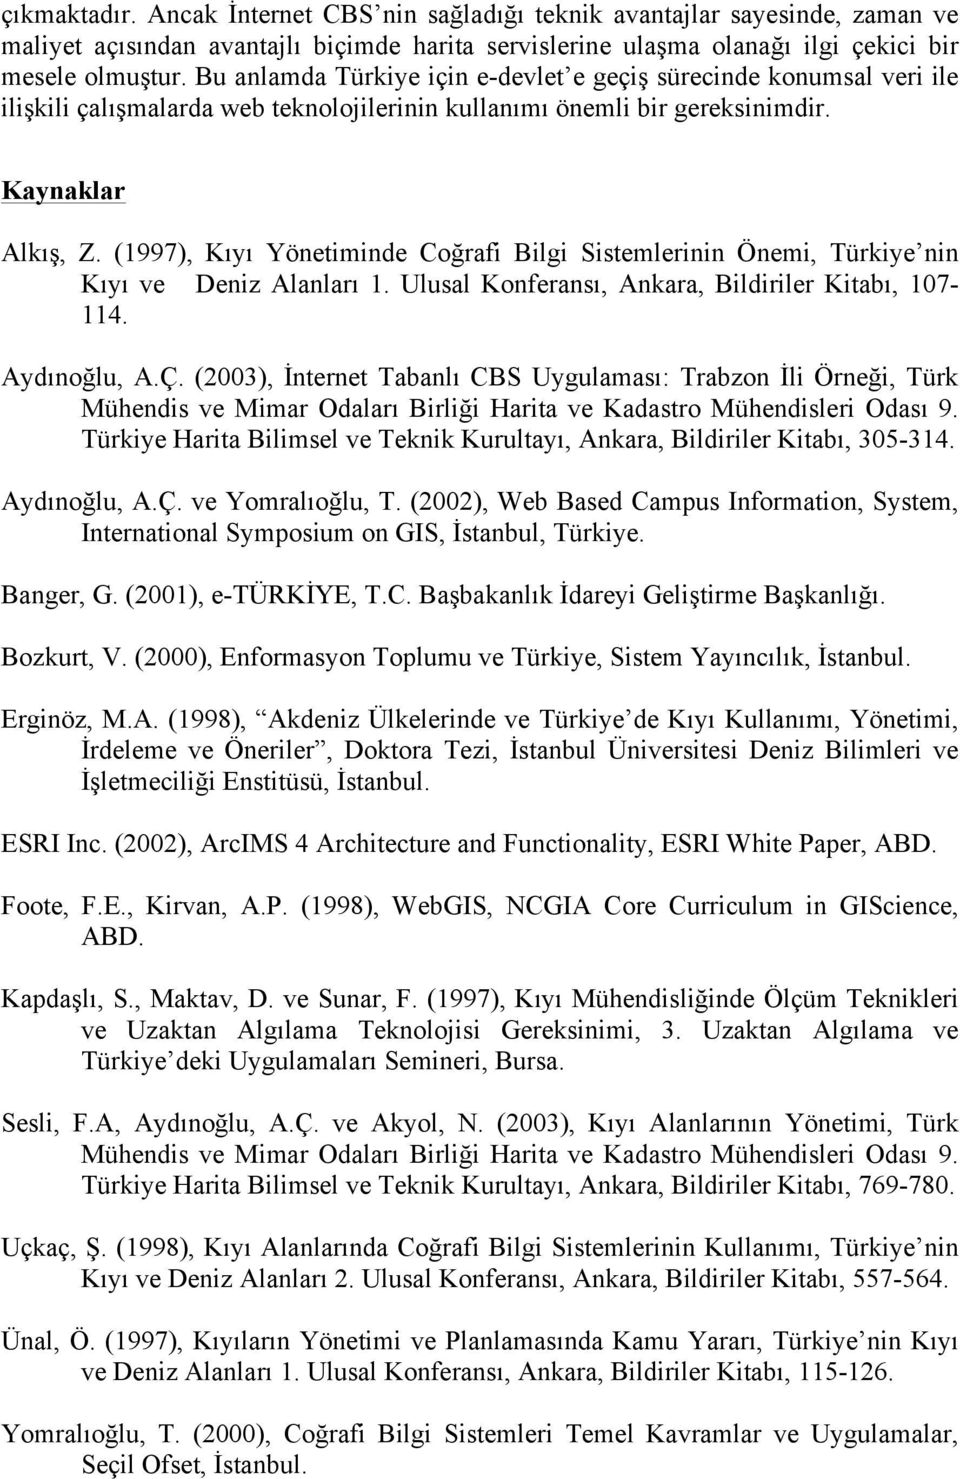 (1997), Kıyı Yönetiminde Coğrafi Bilgi Sistemlerinin Önemi, Türkiye nin Kıyı ve Deniz Alanları 1. Ulusal Konferansı, Ankara, Bildiriler Kitabı, 107-114. Aydınoğlu, A.Ç.